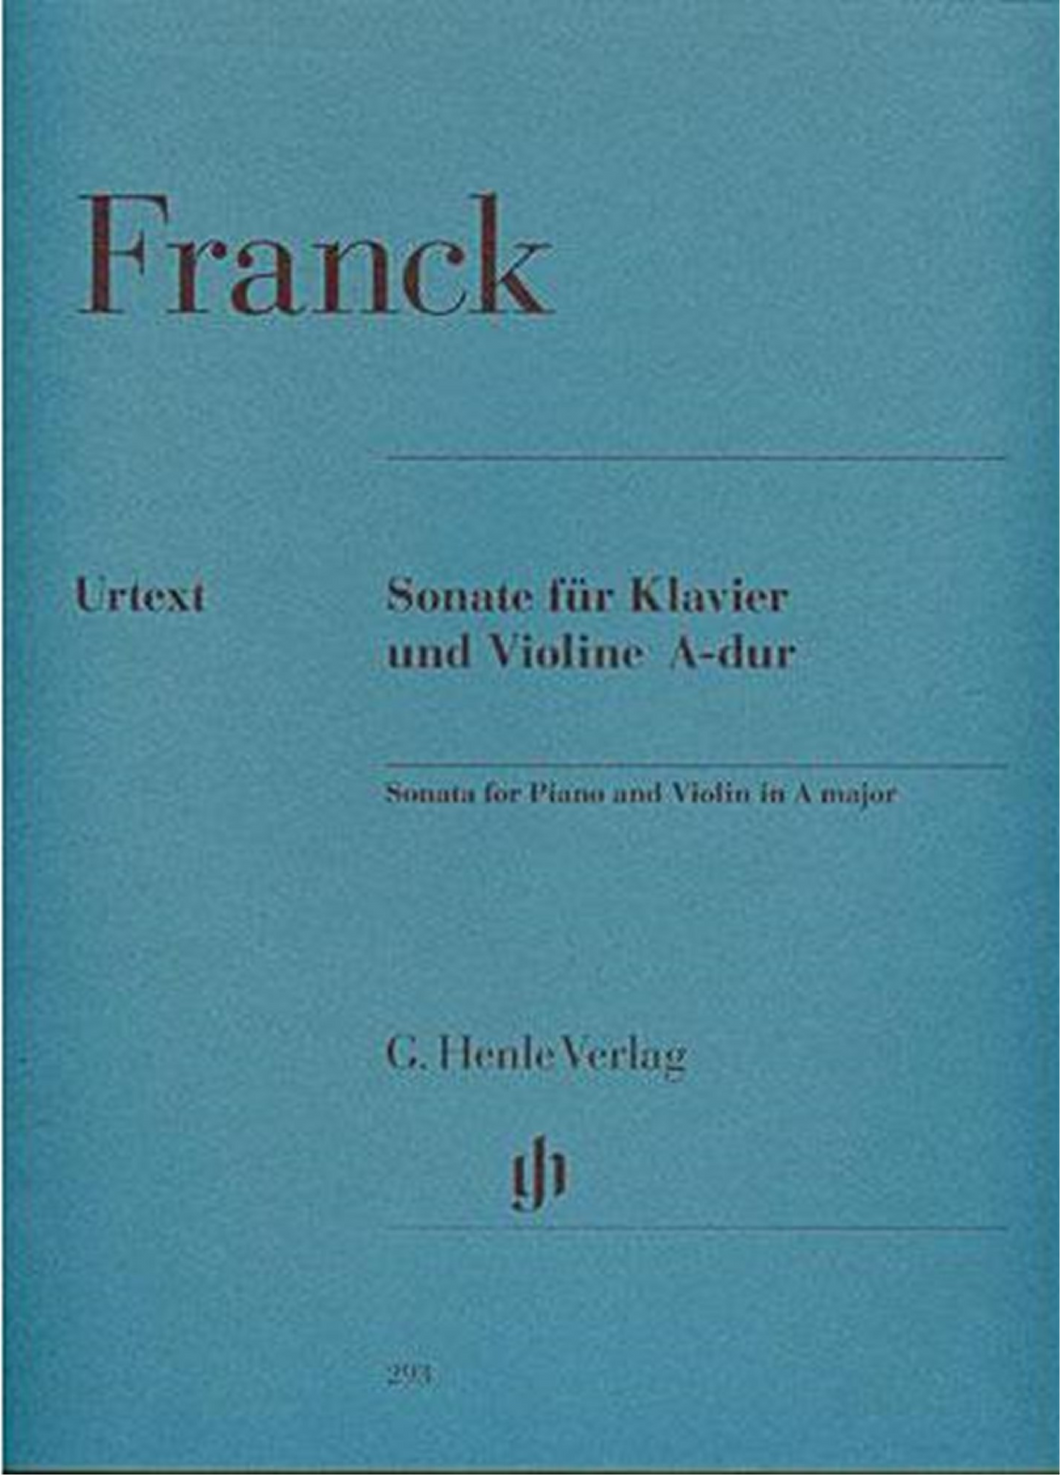 CÉSAR FRANCK: Violin Sonata A major